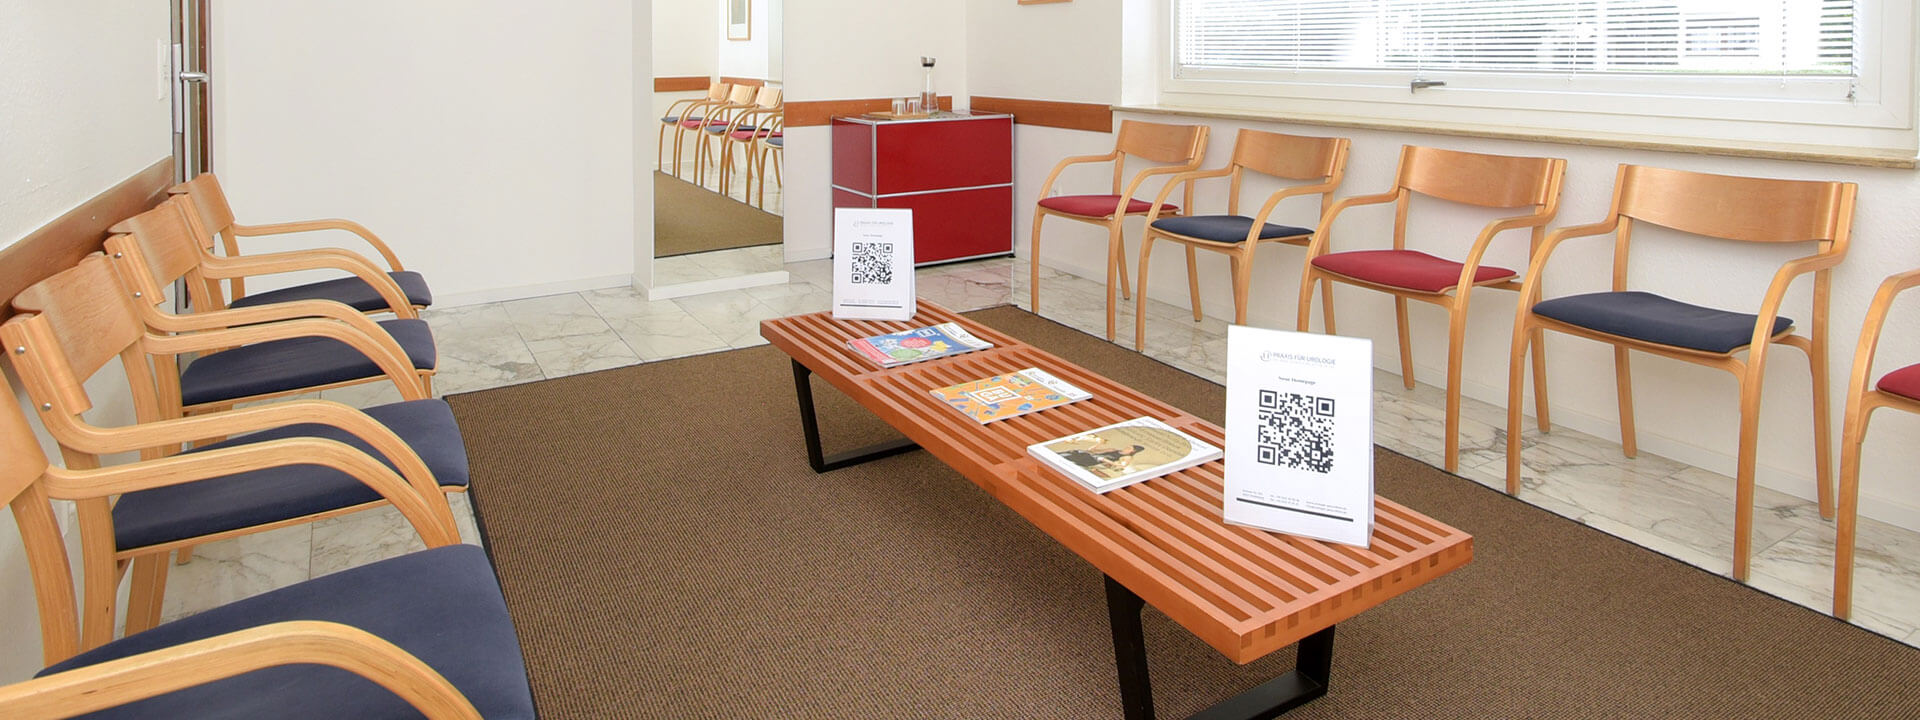 Blick in das Wartezimmer der Praxis mit Stühlen, Tisch und Informationsmaterial zum lesen